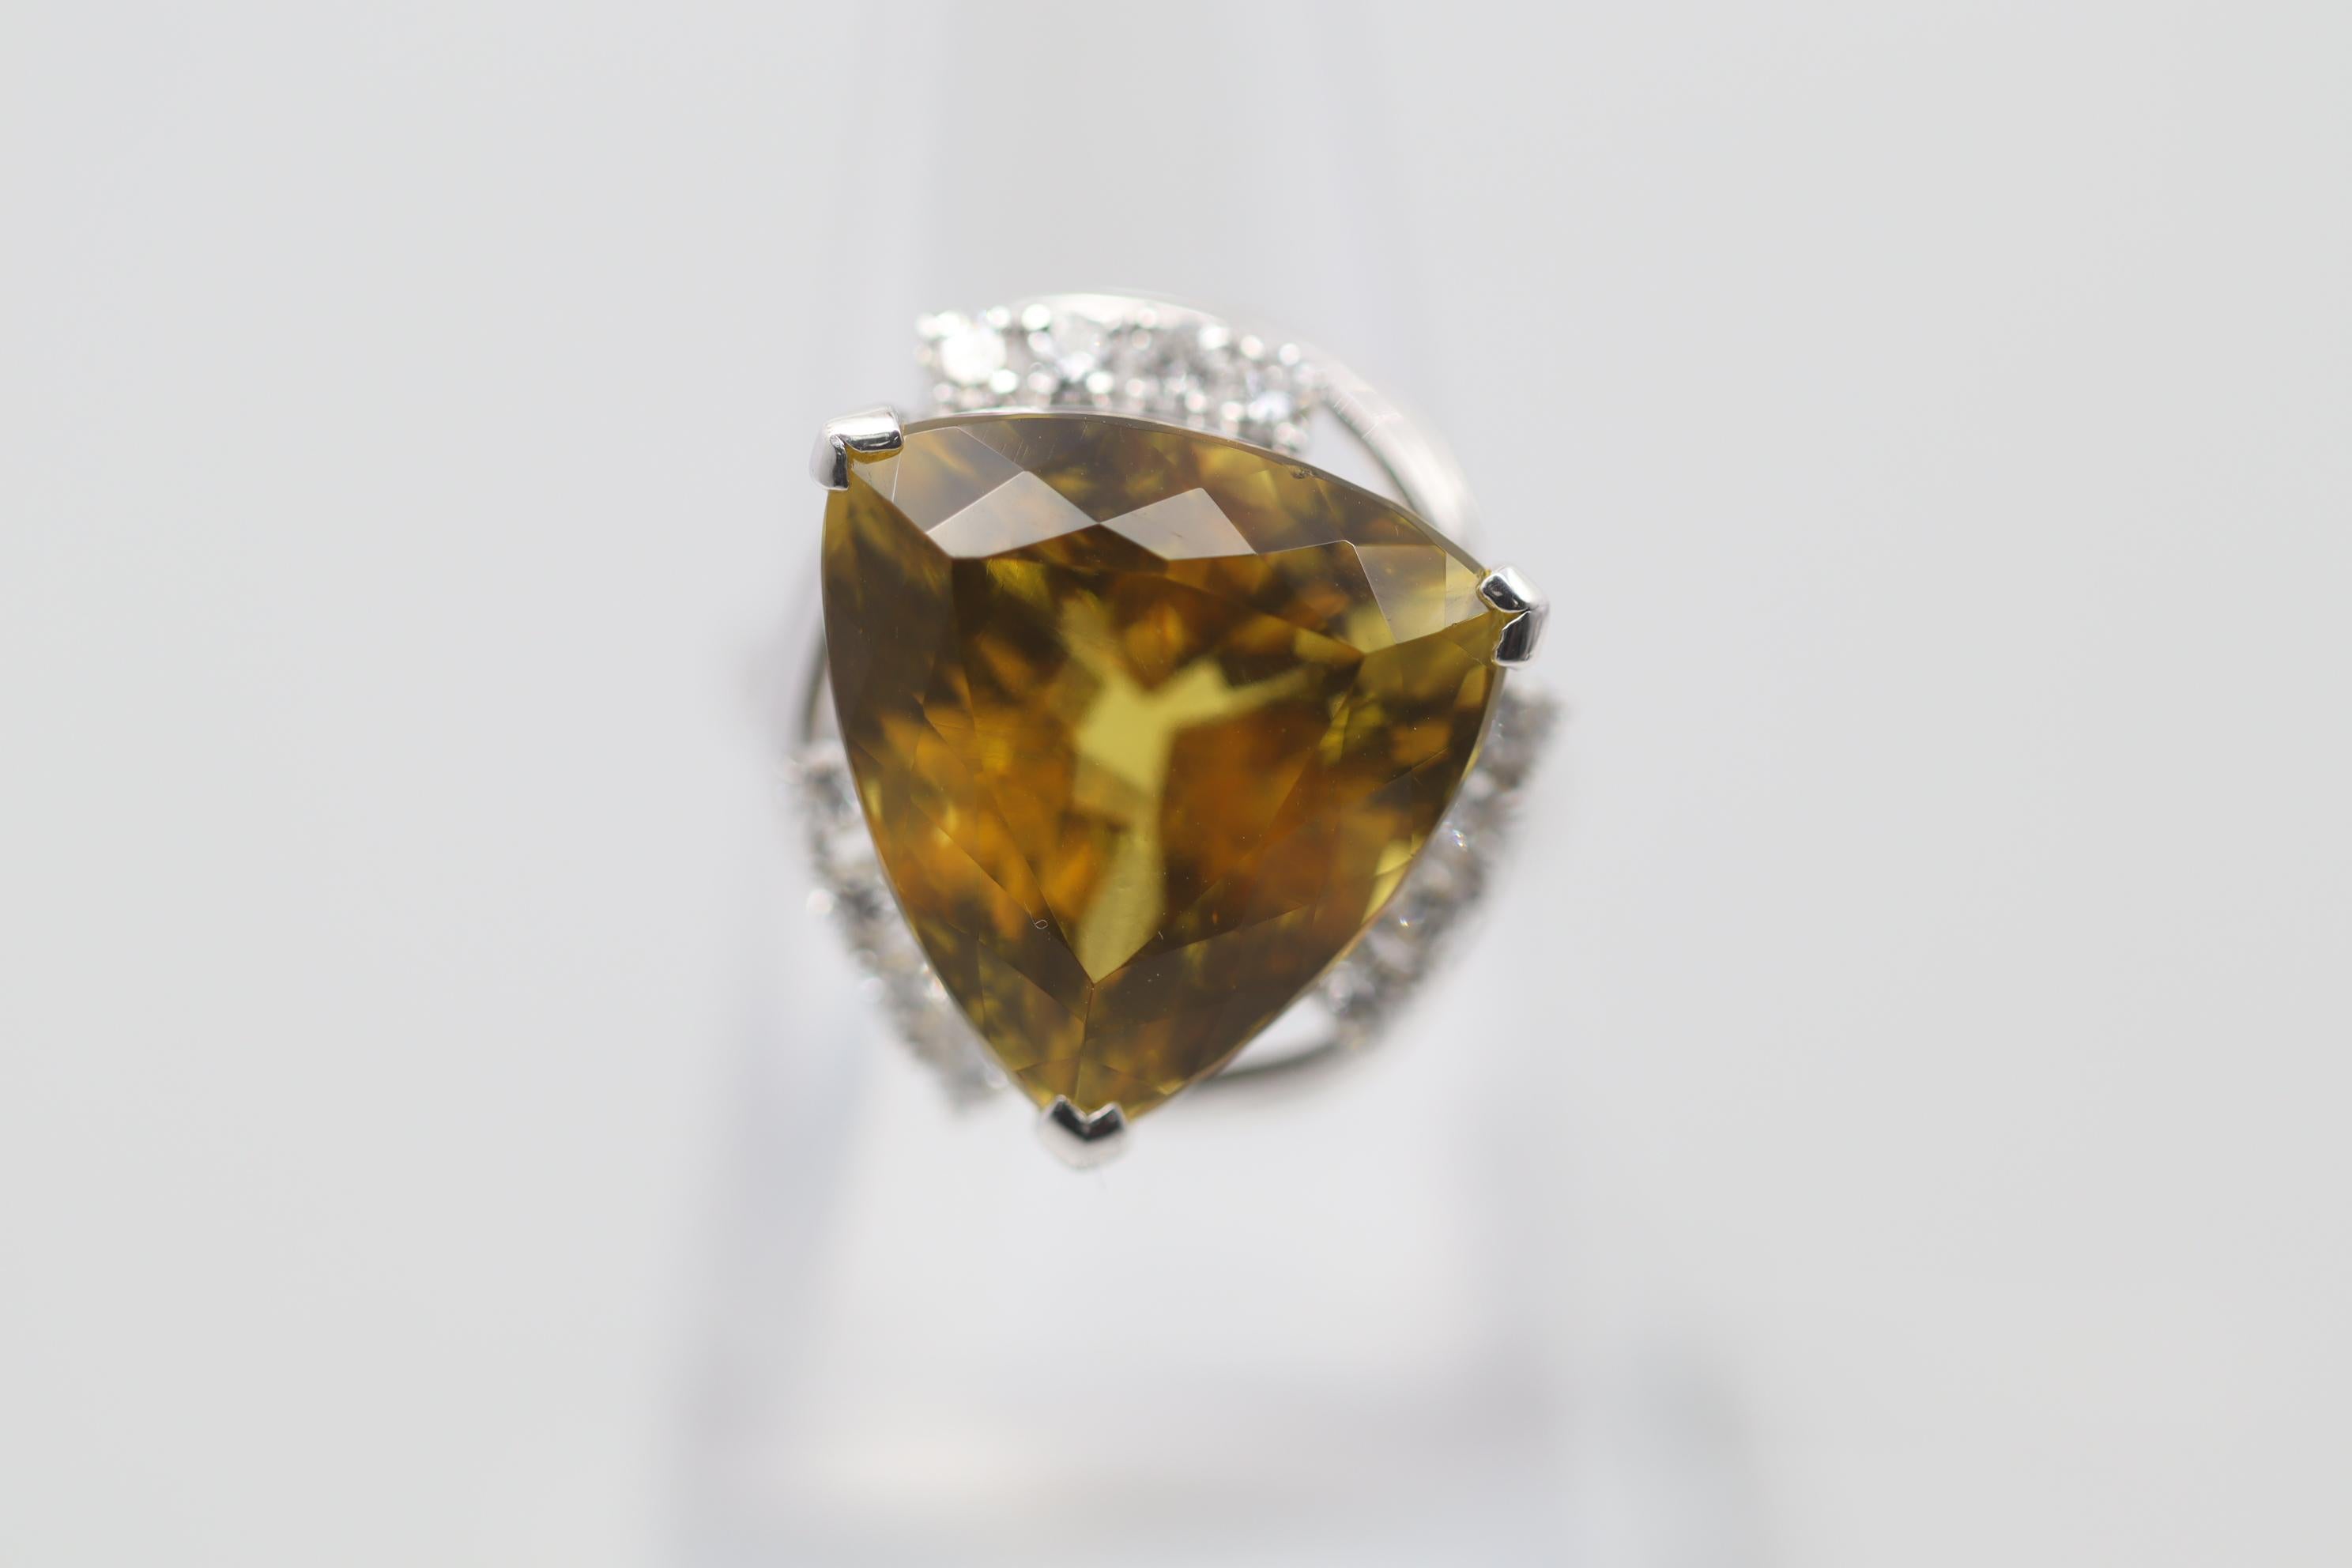 Ein stilvoller Ring mit einem einzigartigen Edelstein, einem goldenen, gelben Beryll, der aus der gleichen Familie wie Smaragd (grüner Beryll) und Morganit (pink Beryll) stammt. Er wiegt 14,93 Karat und hat die Form eines dreieckigen